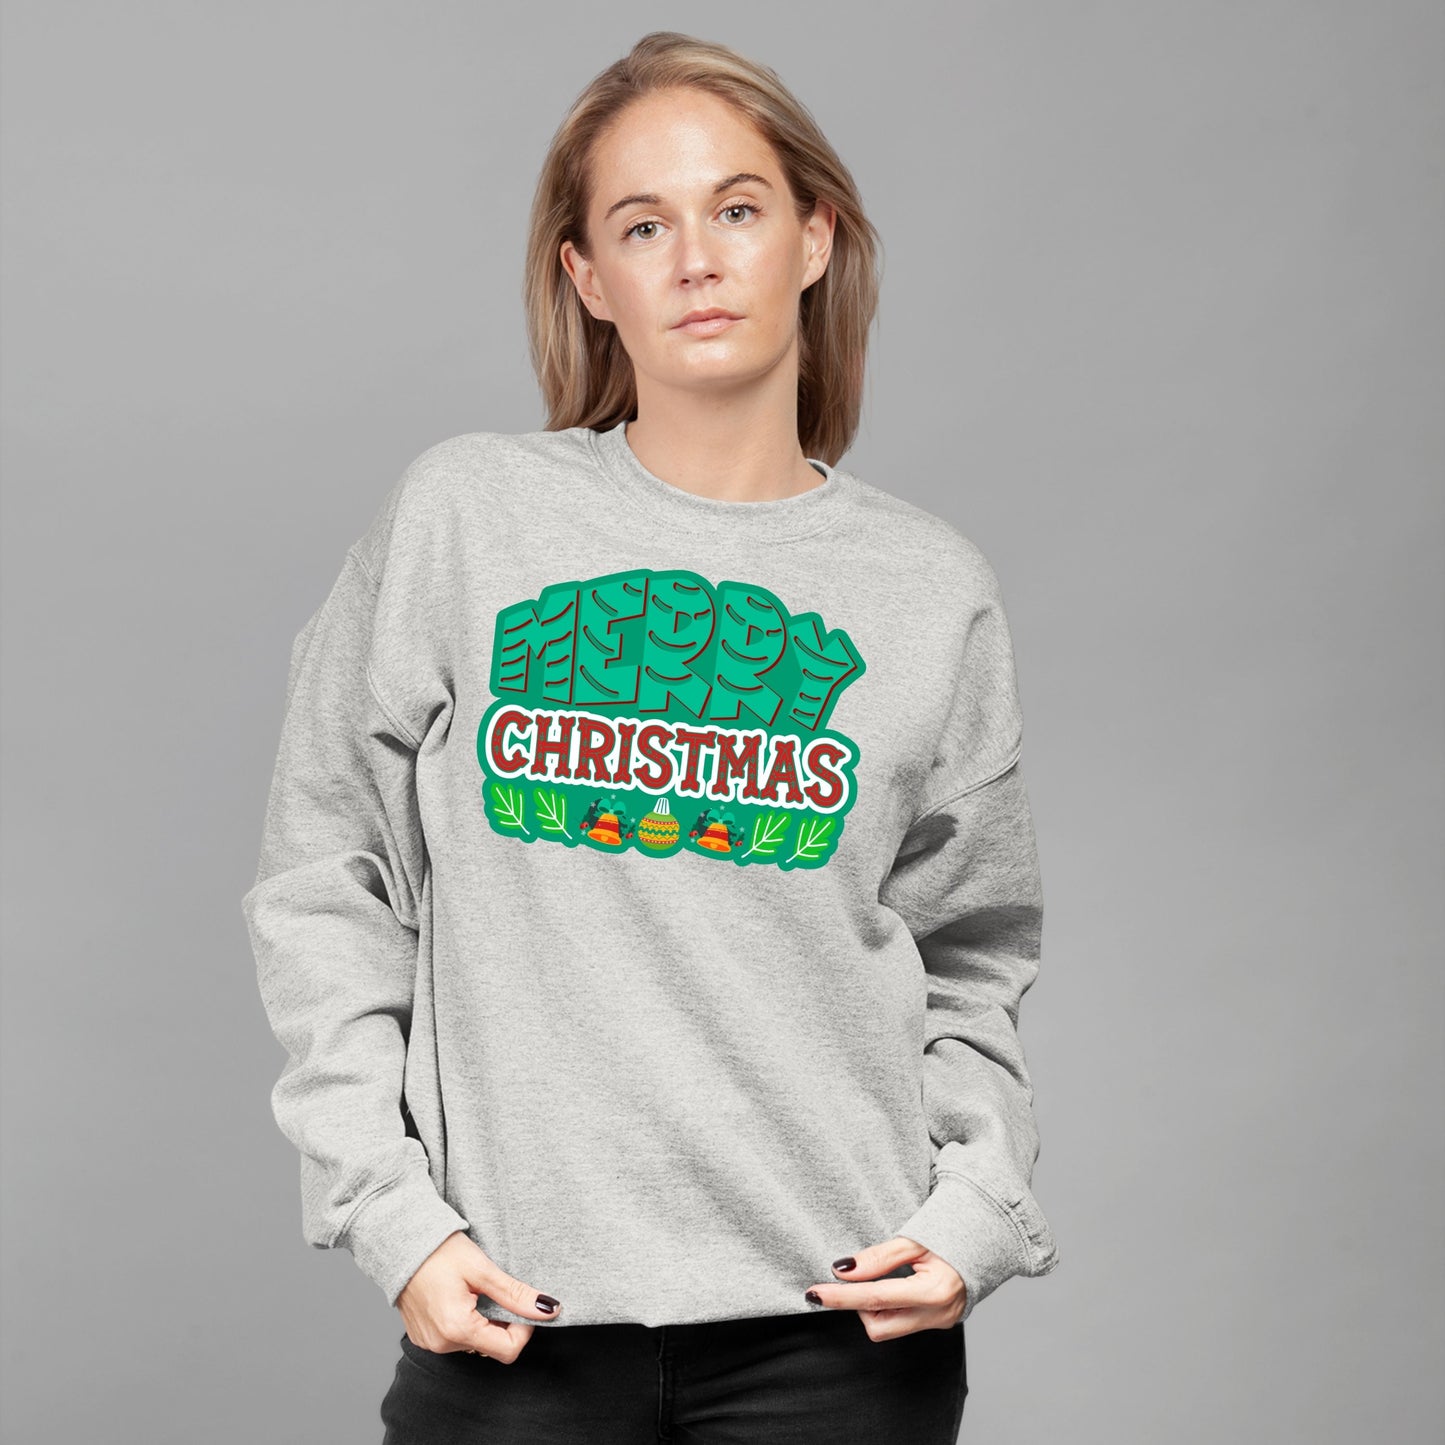 Merry Christmas, Christmas Long Sleeves, Christmas Crewneck For Women, Christmas Present, Christmas Sweater, Christmas Sweatshirt